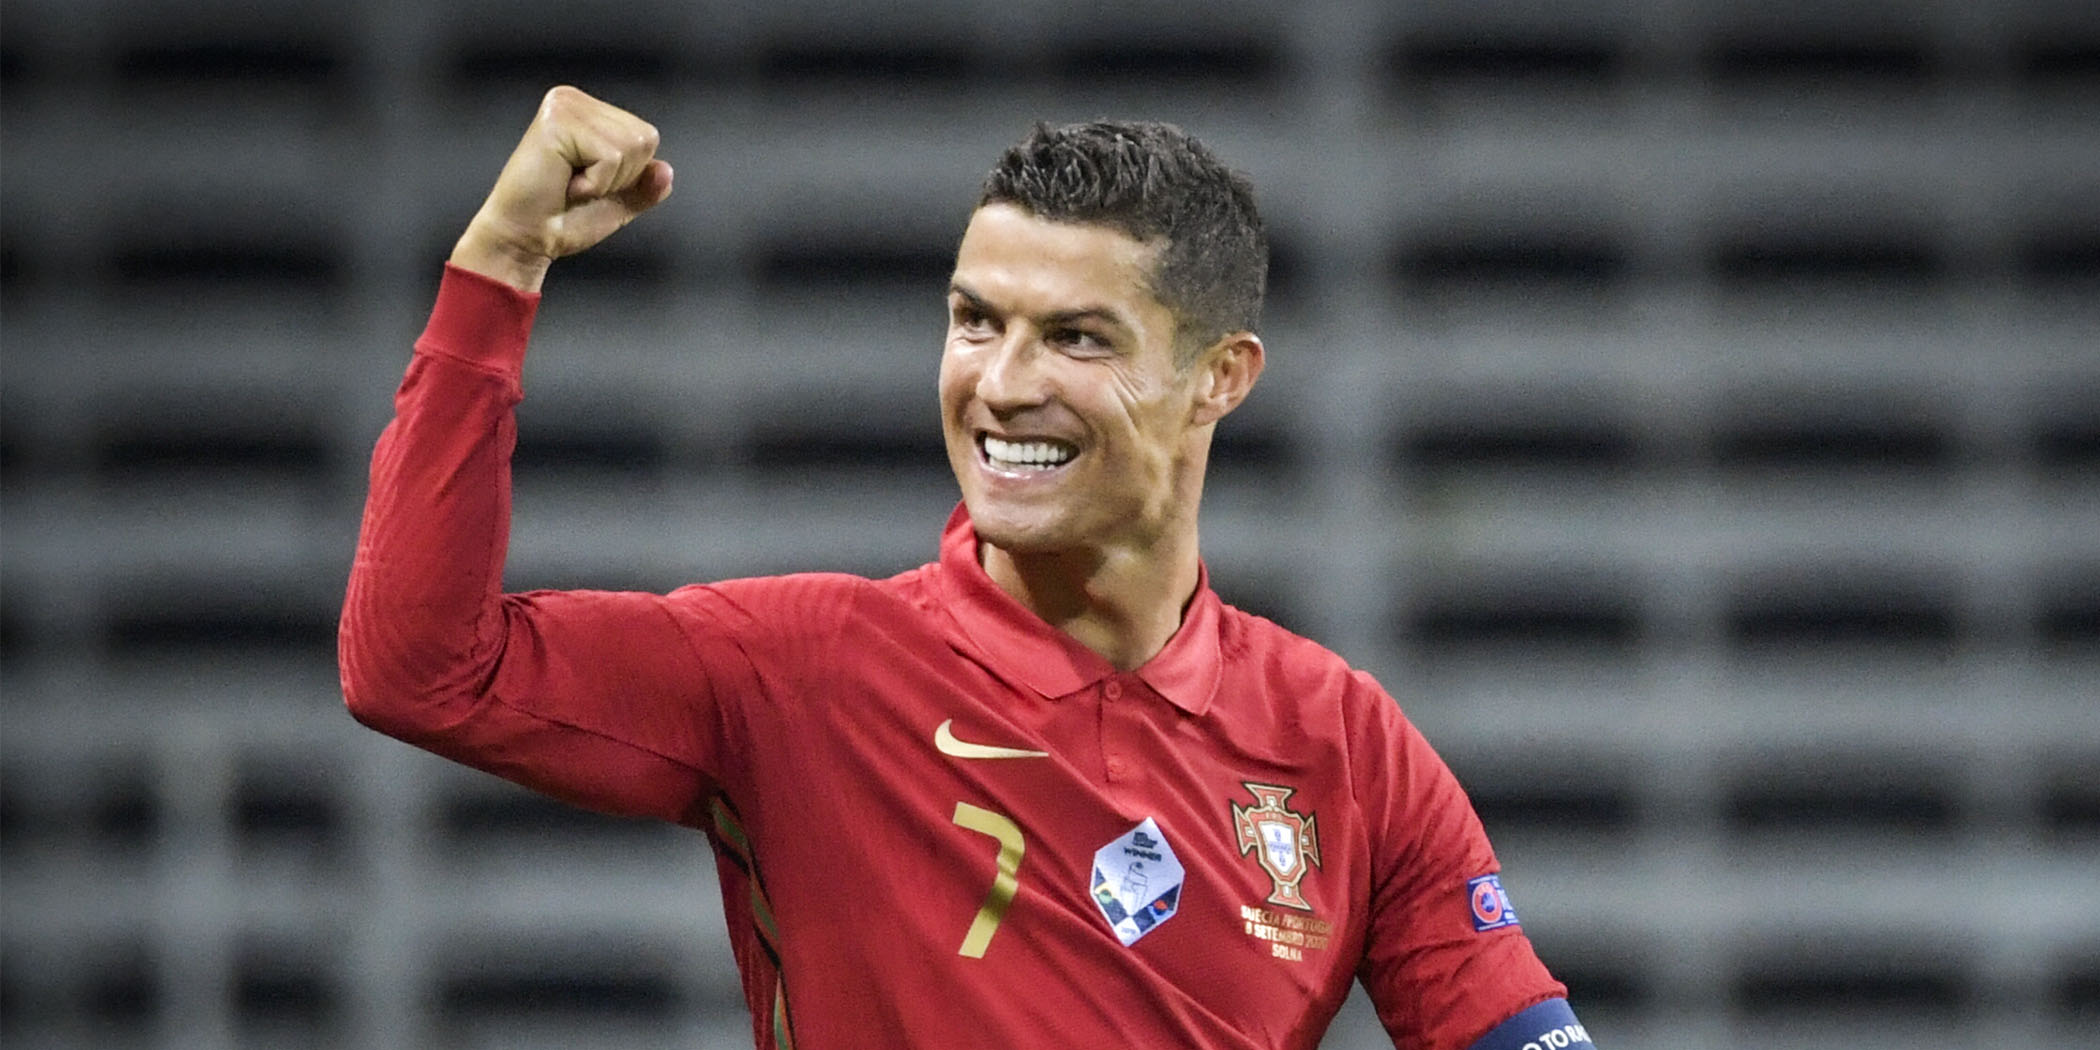 Ronaldo szaúdi klubban folytathatja